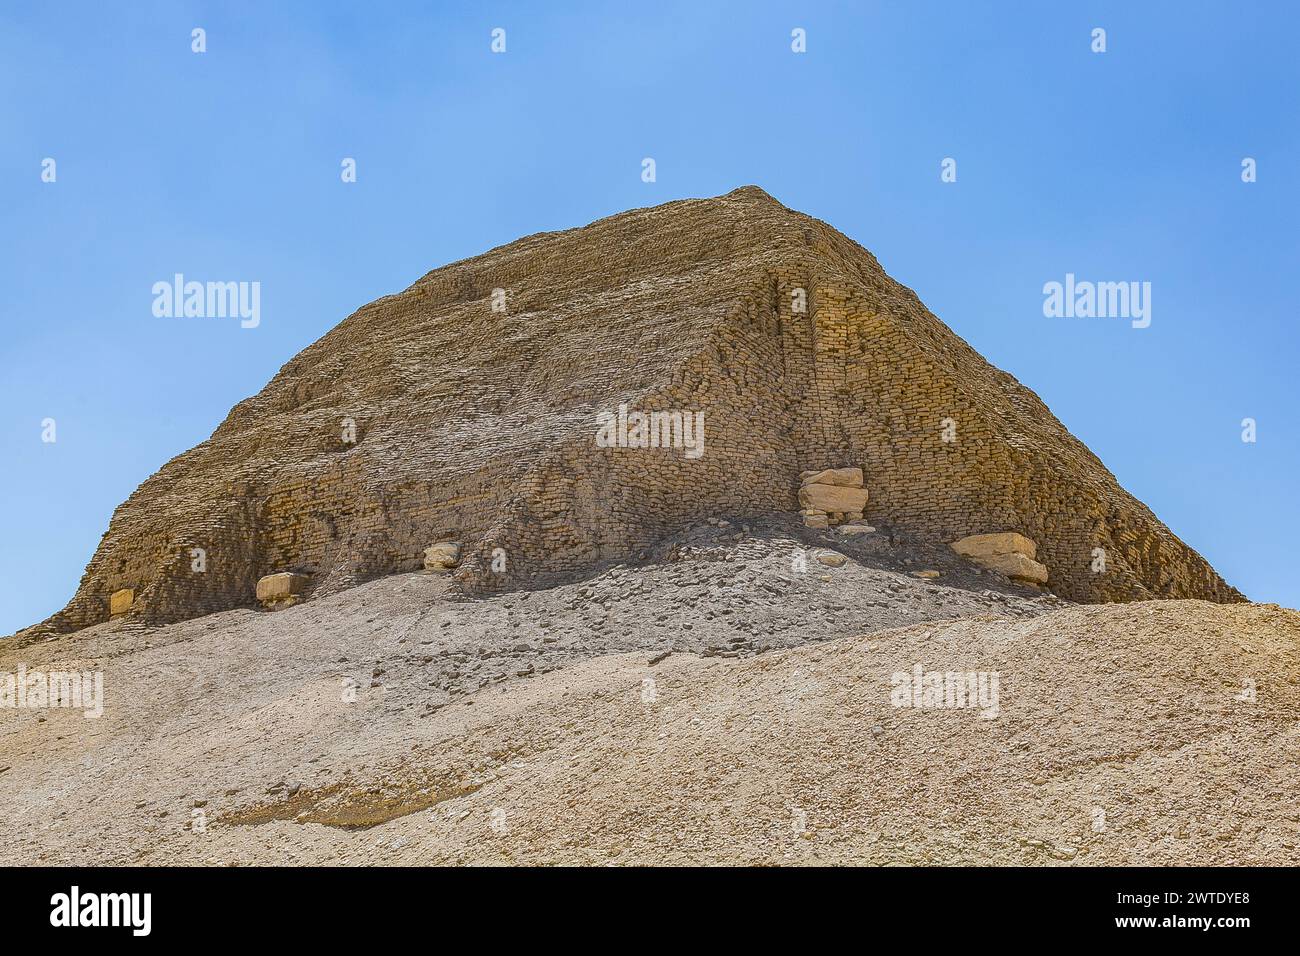 Ägypten, Region Fayum, El Lahun, Pyramide von Sesostris II., Ziegelsteine verstärkt durch harte Steinstrukturen. Stockfoto